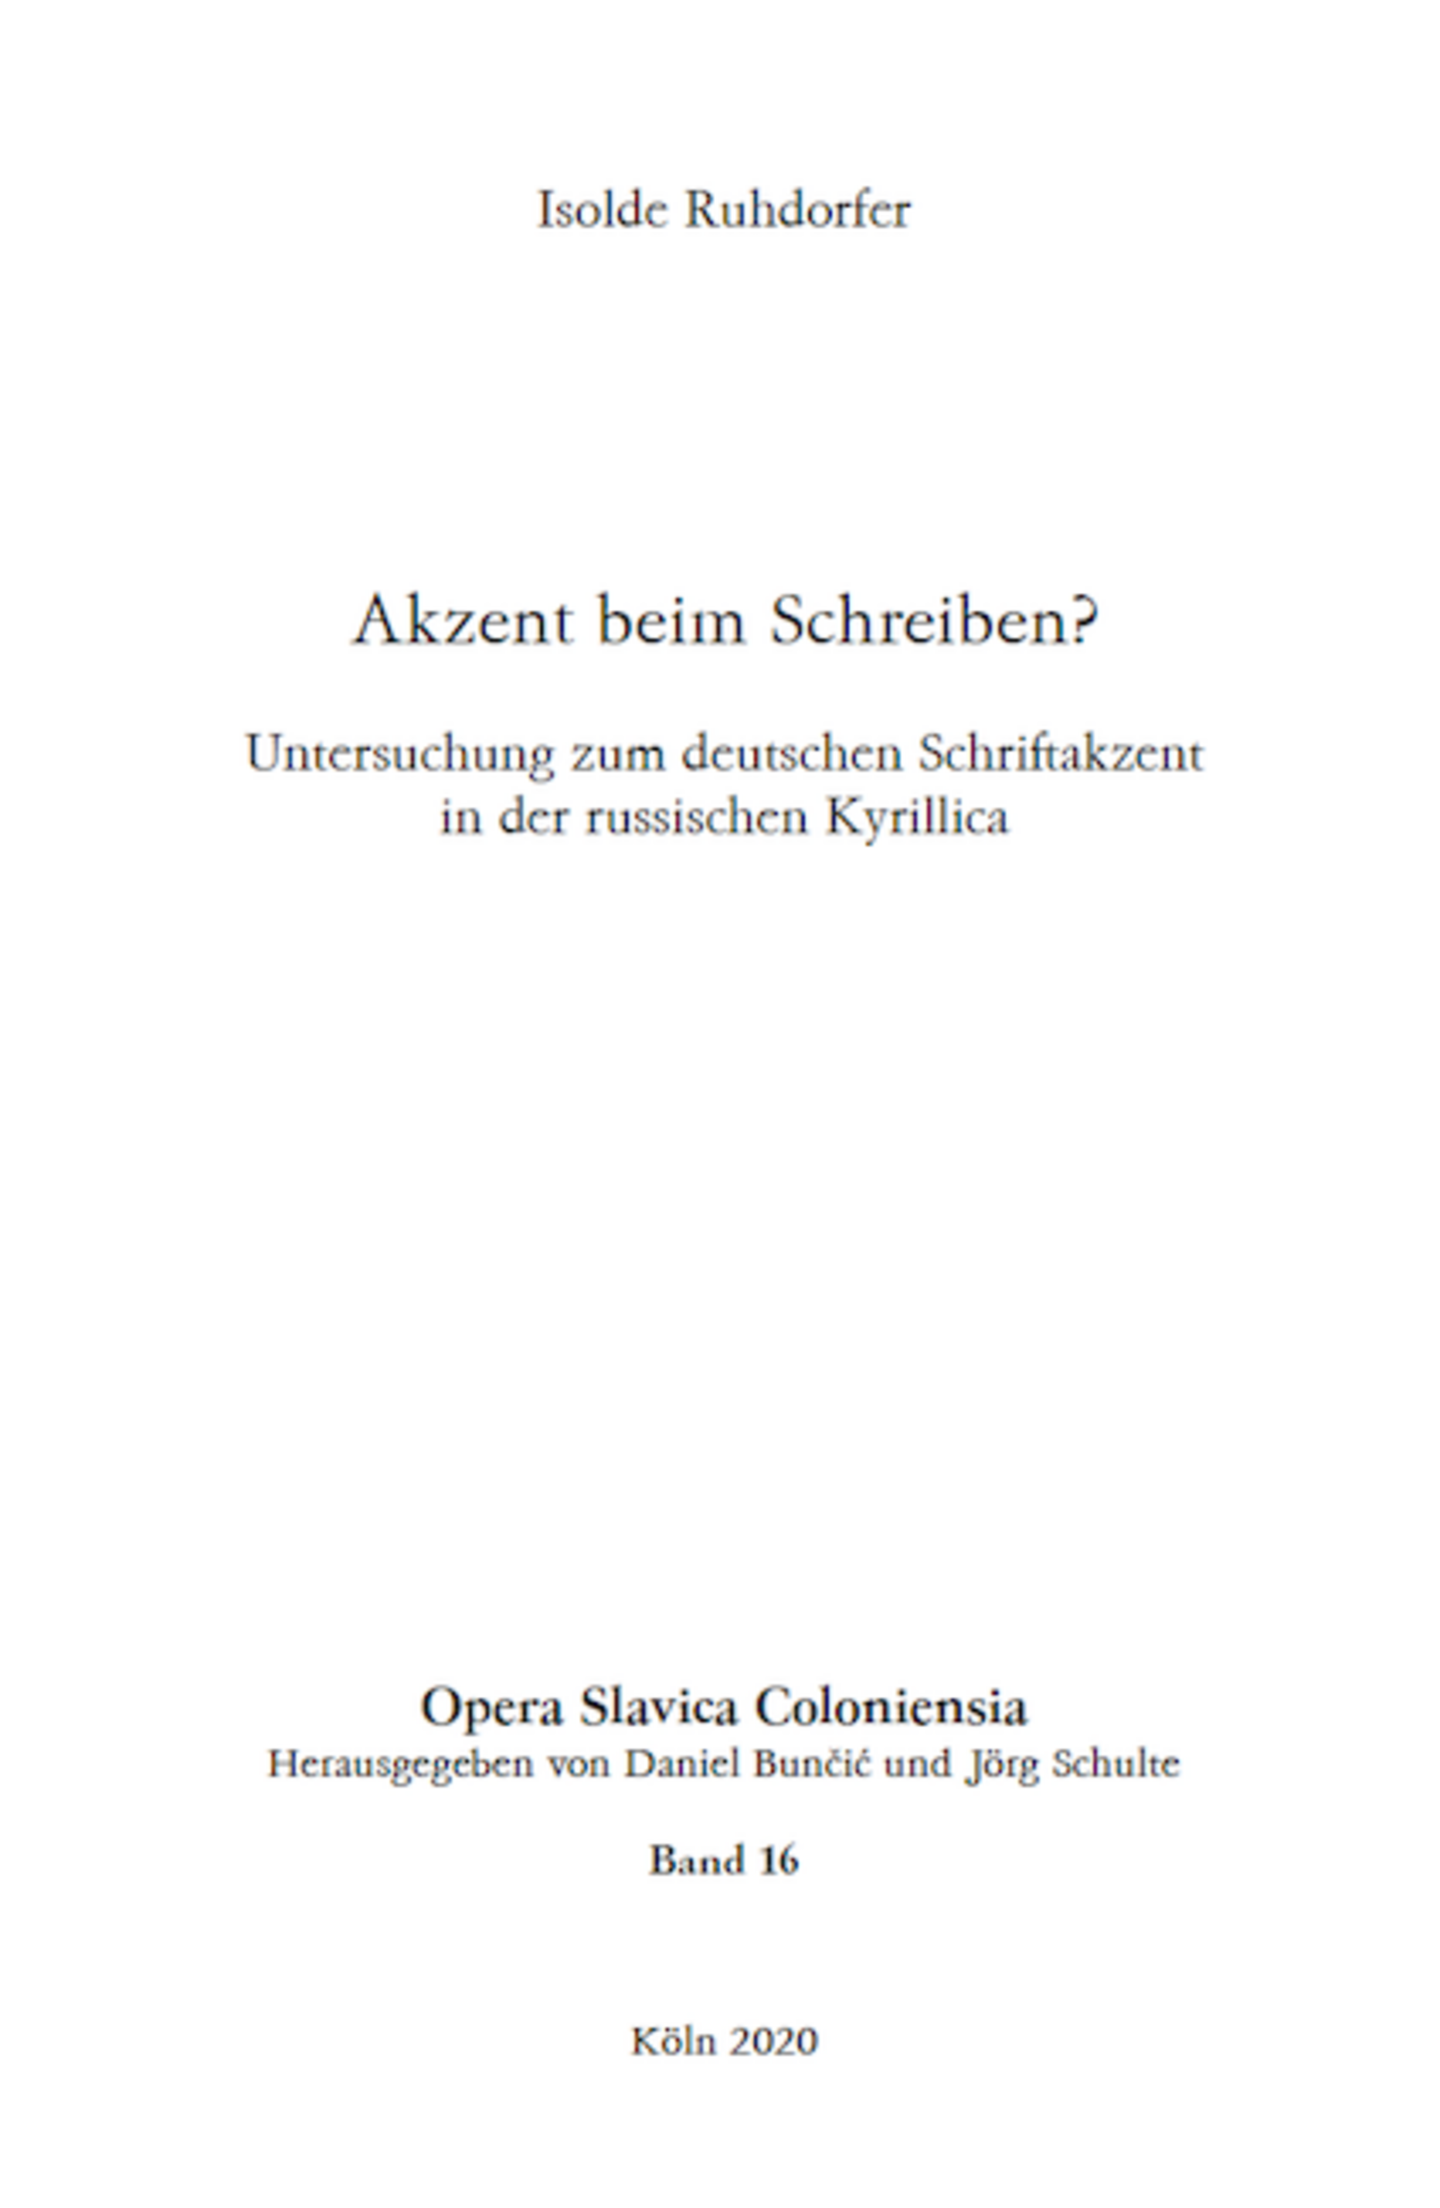 Isolde Ruhdorfer (2020) Akzent beim Schreiben? Untersuchung zum deutschen Schriftakzent in der russischen Kyrillica